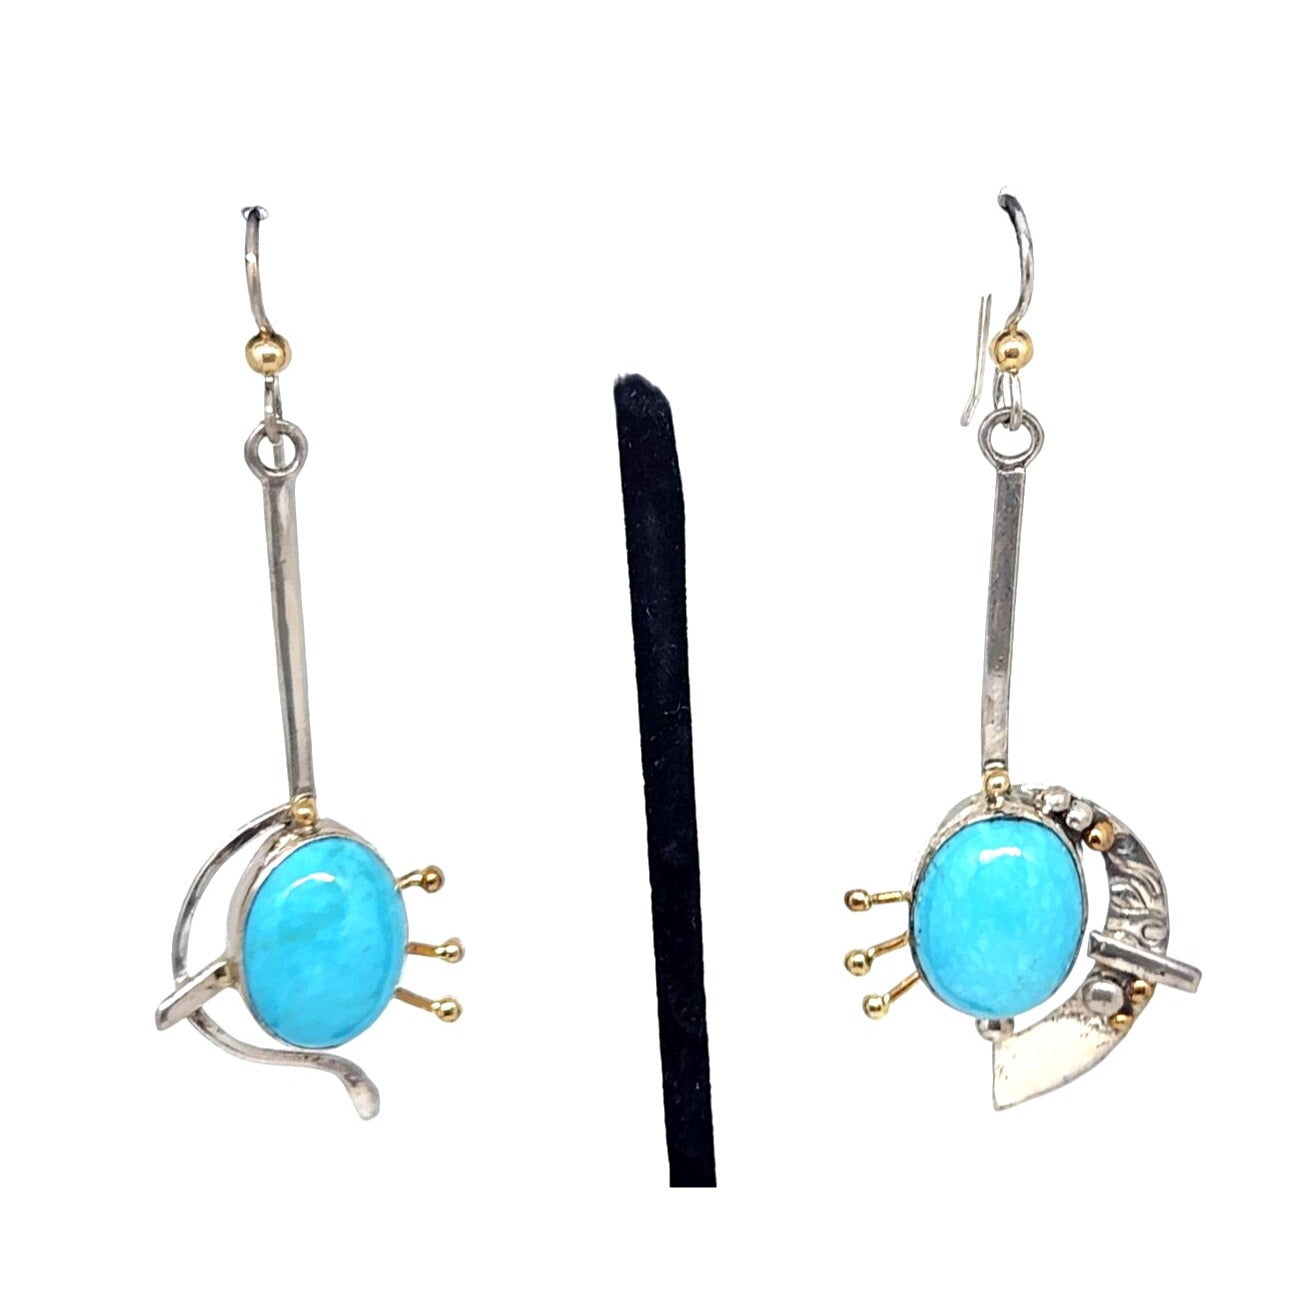 Sleeping Beauty Turquoise Earrings 10 Gr Silver Hooks Dangle Long 14K Gold Accents